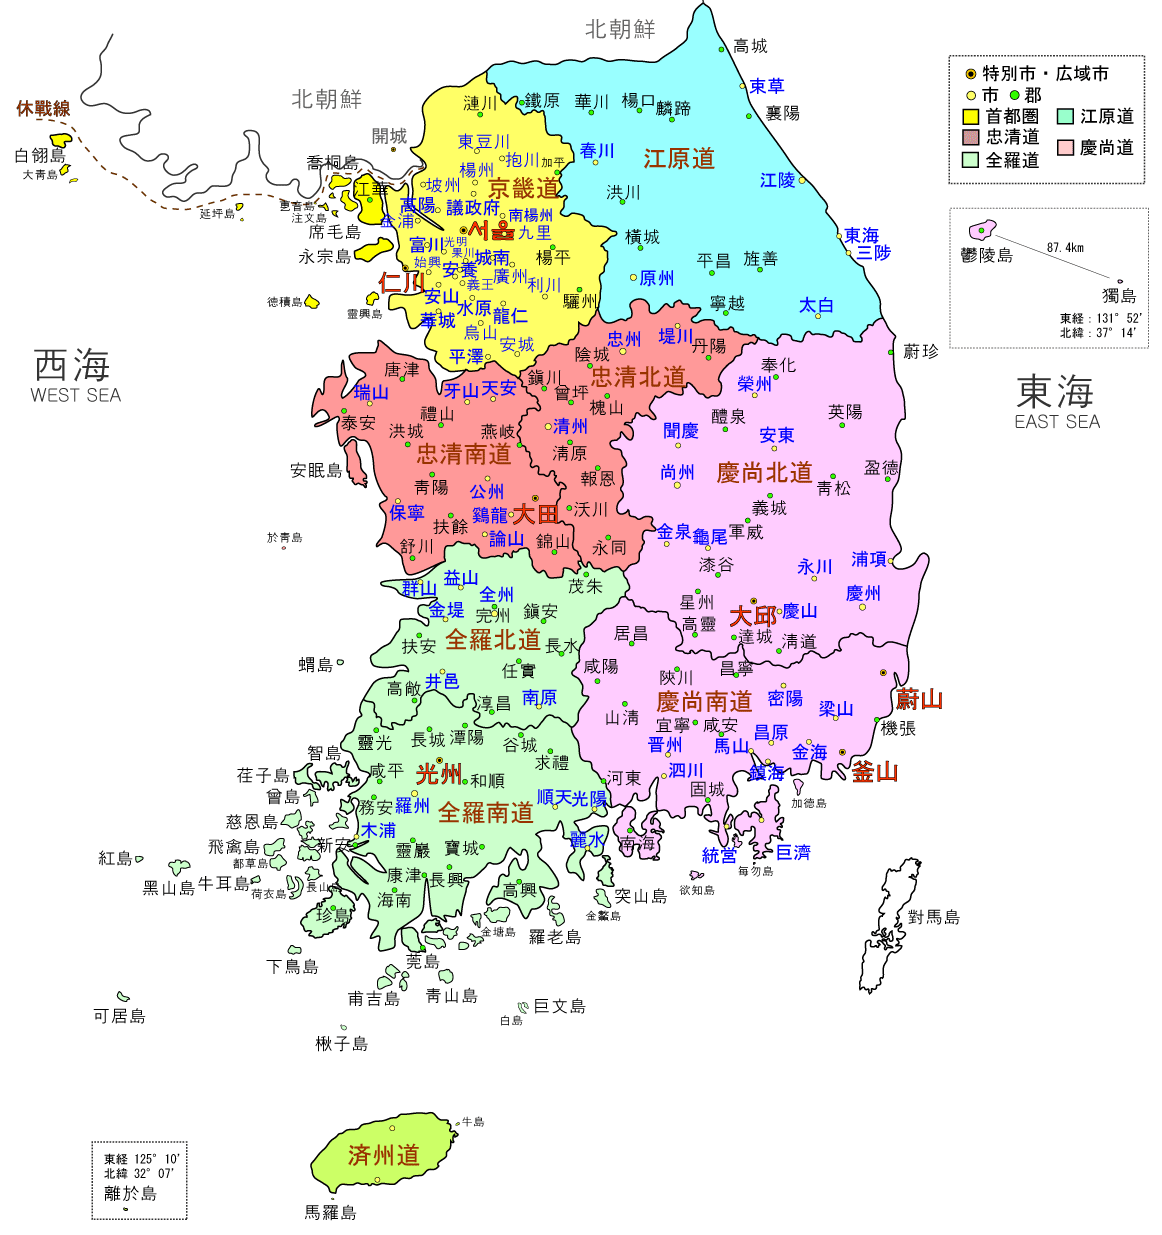 主要城市:釜山,仁川,大邱,光州,大田,蔚山,济州市等 韩国行政区划分